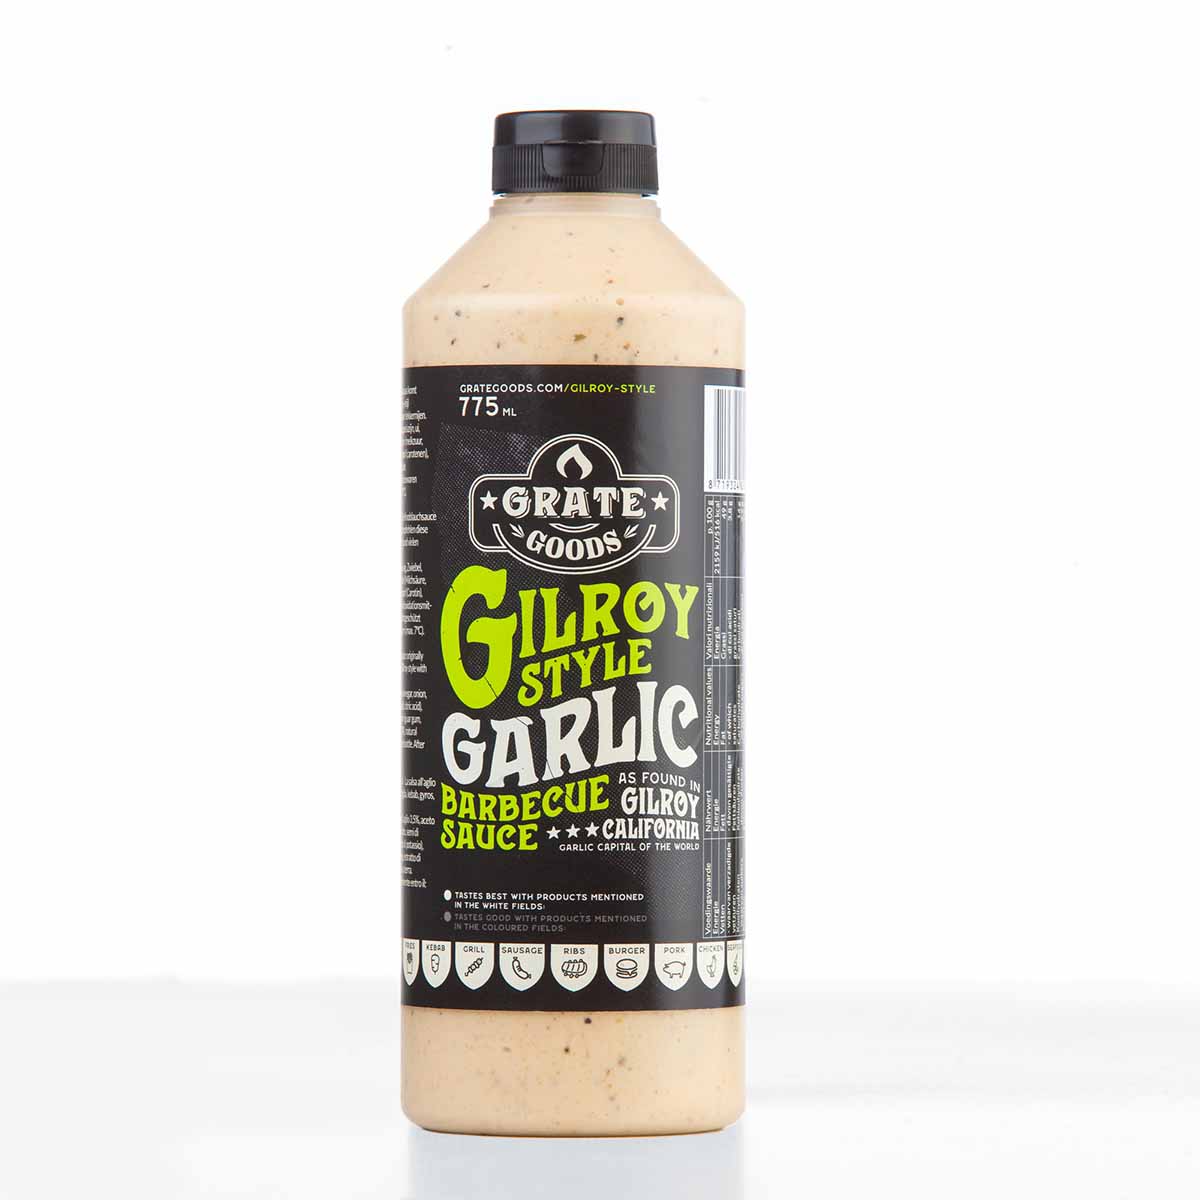 GG Gilroy Garlic Sauce 775ml